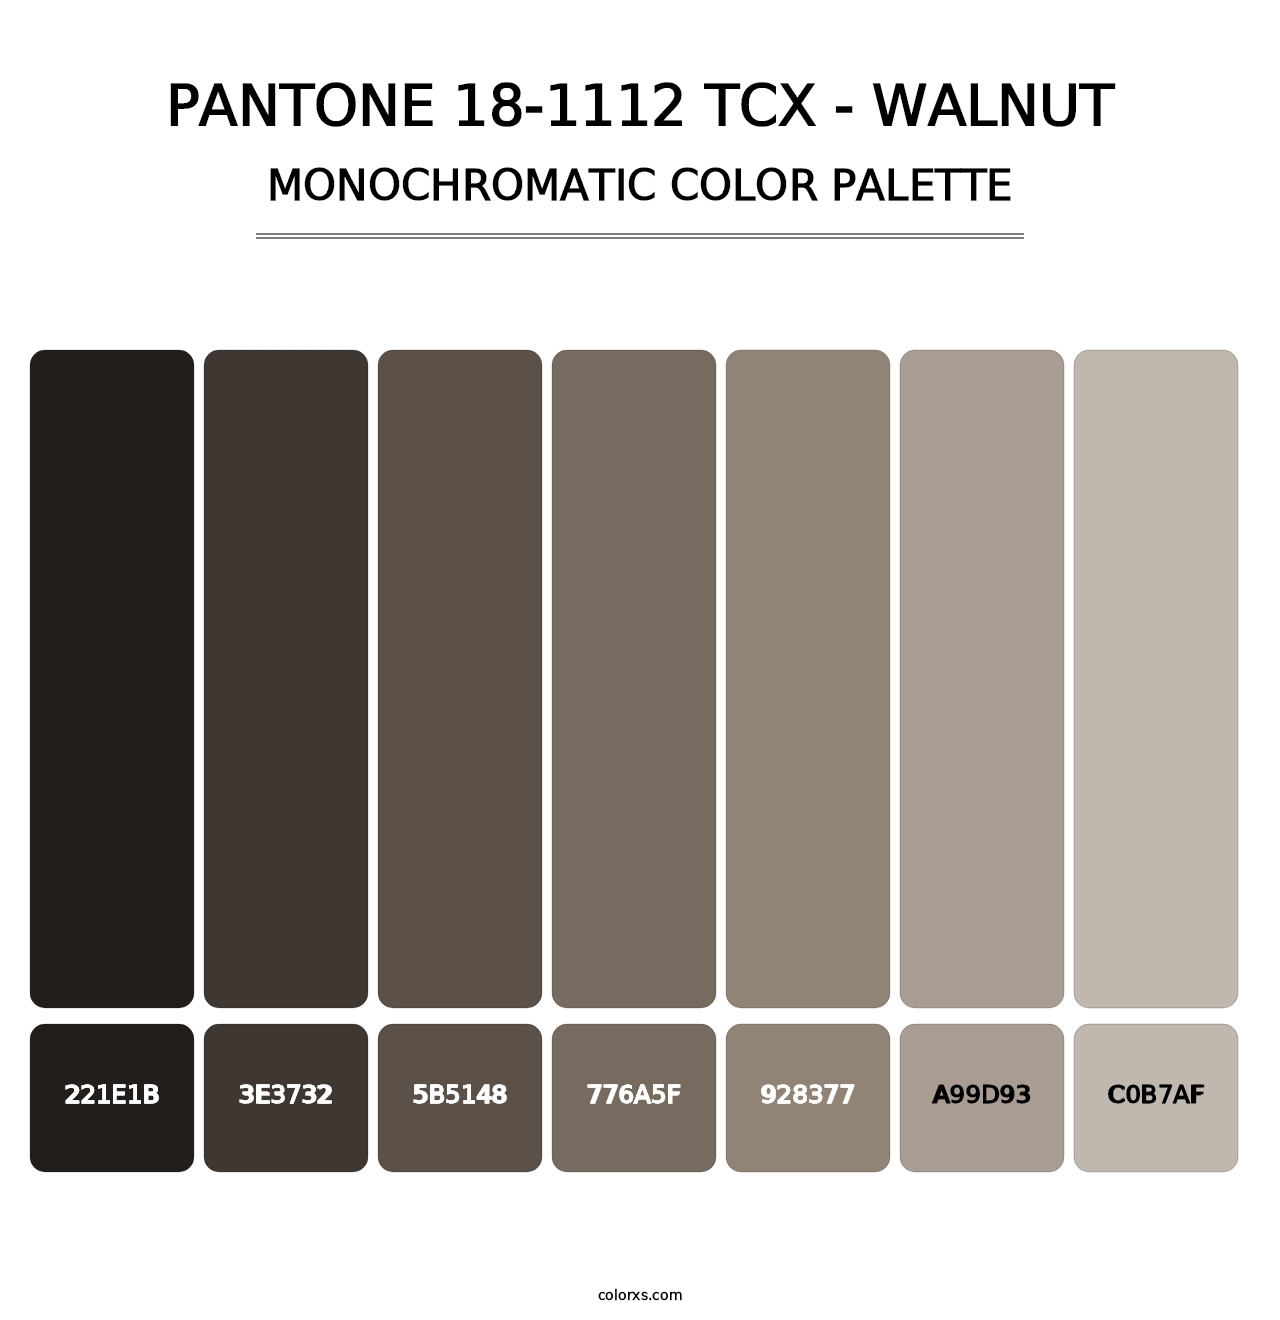 PANTONE 18-1112 TCX - Walnut - Monochromatic Color Palette